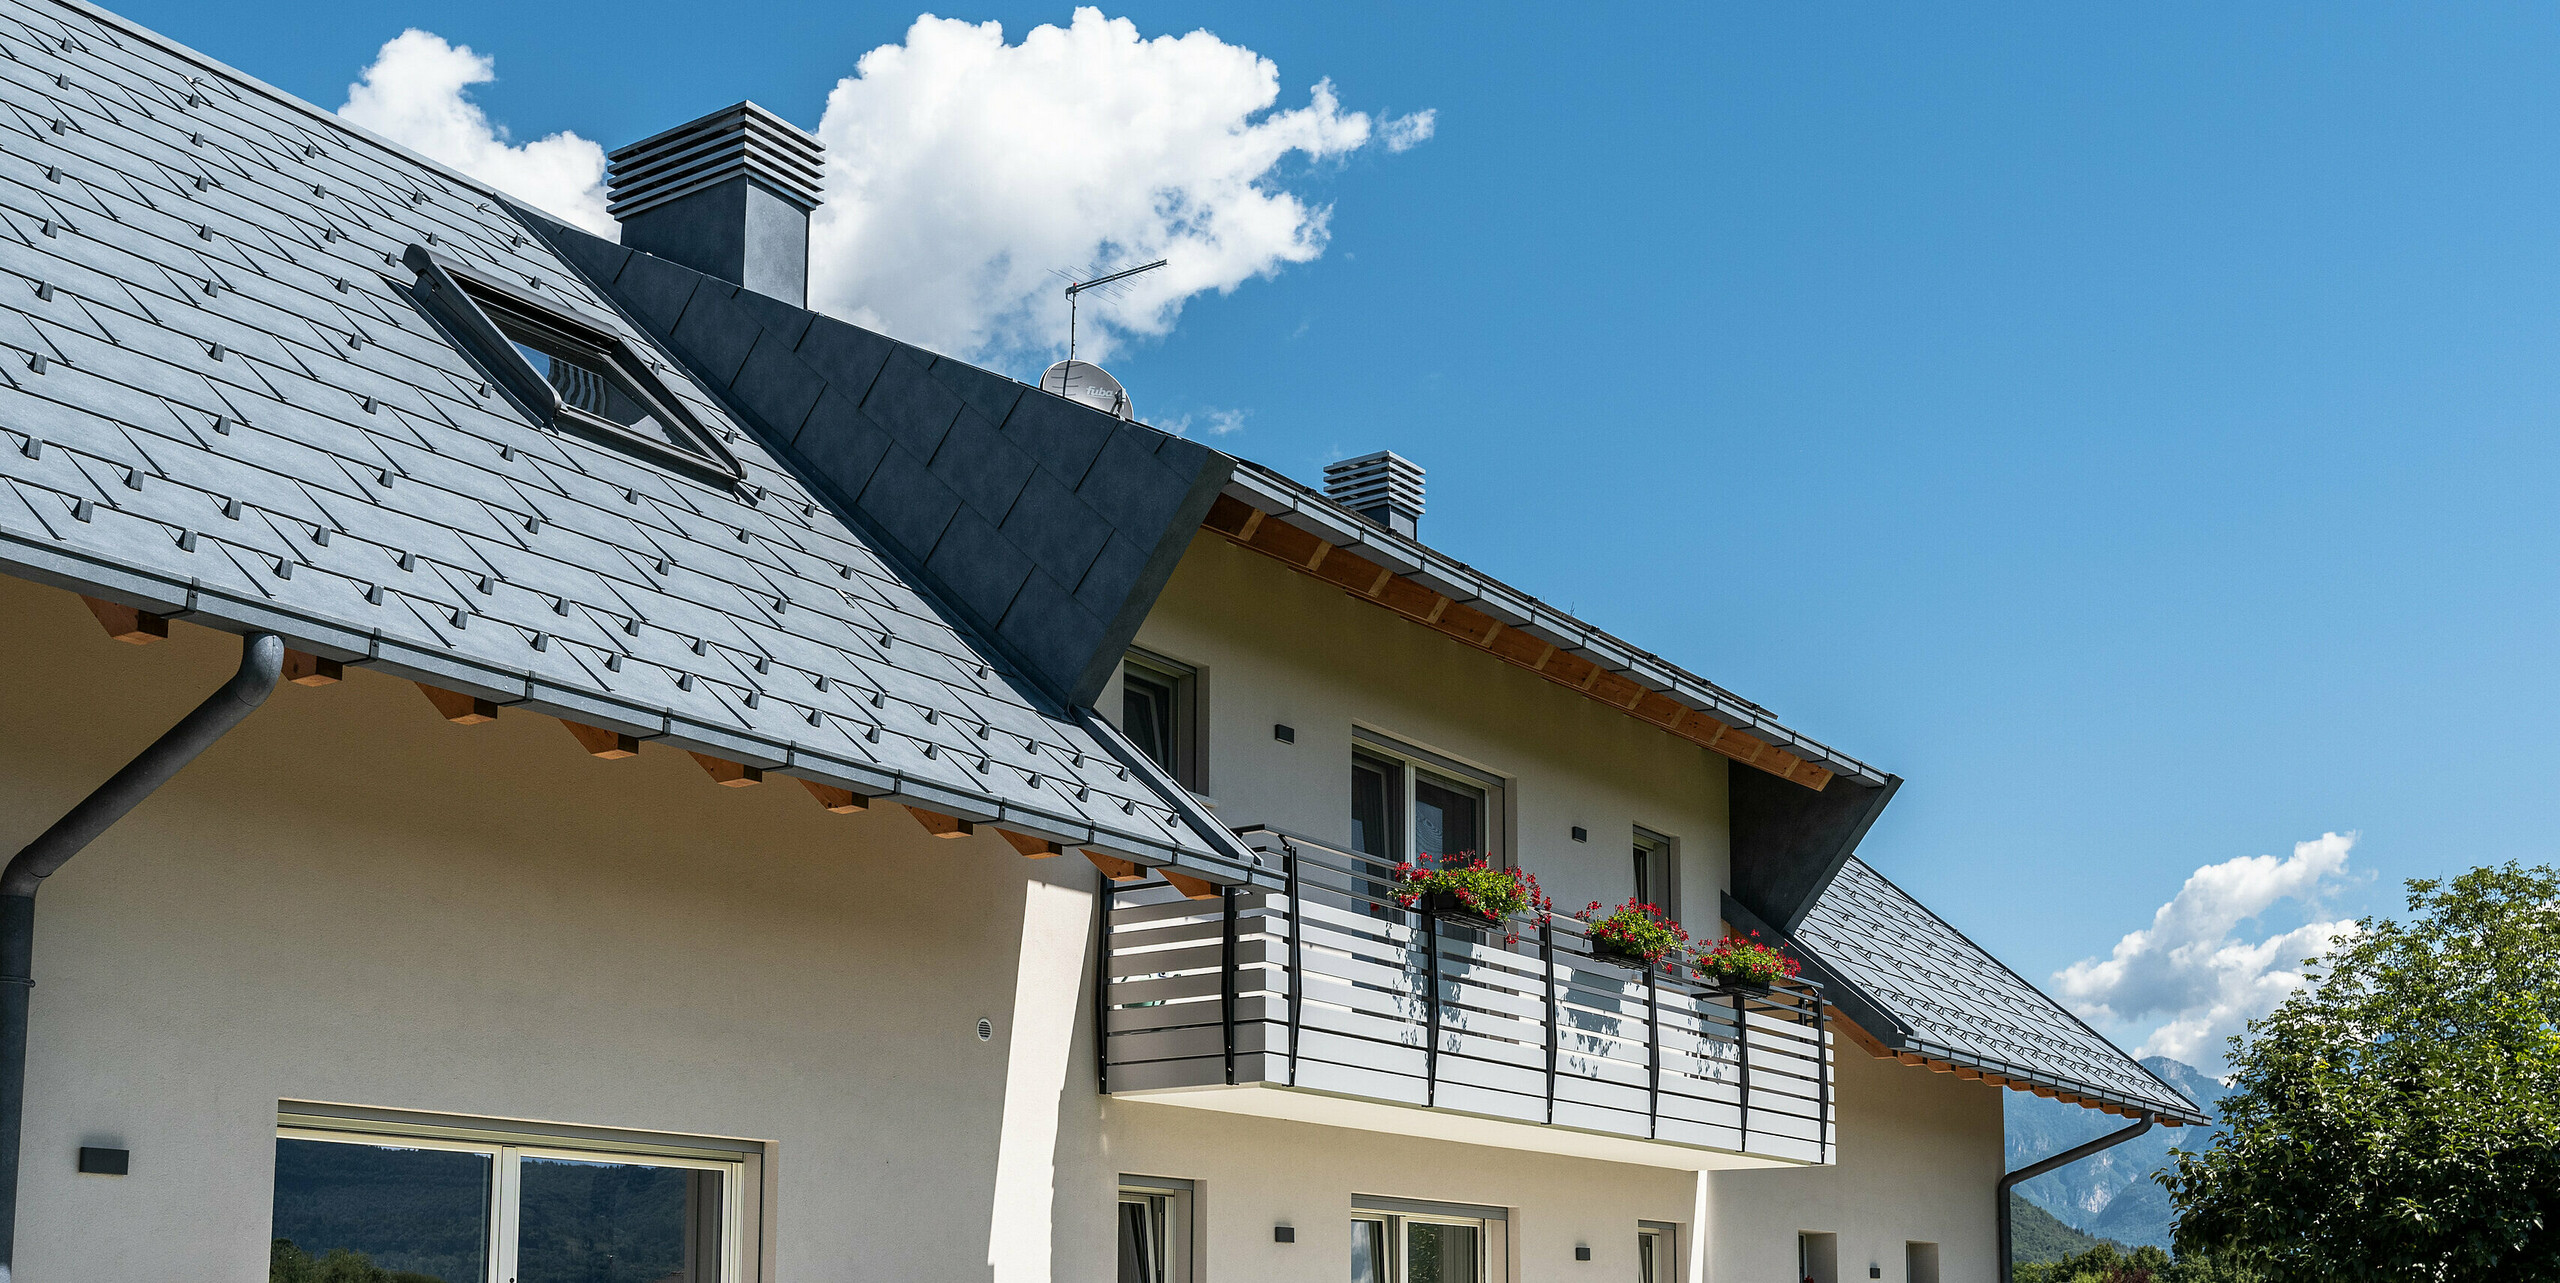 Pohled zdola na elegantní střechu rodinného domu v Belluno, Itálie. Střešní plocha má netopýří vikýř a byla pokryta střešními panely PREFA R.16 v barvě P.10 antracit. Střešní odvodnění od PREFA sestávající z krabicového žlabu a odtokové trubky je barevně sladěno s robustní hliníkovou střechou, což vytváří jednotnou a moderní estetiku a zároveň nabízí optimální ochranu.